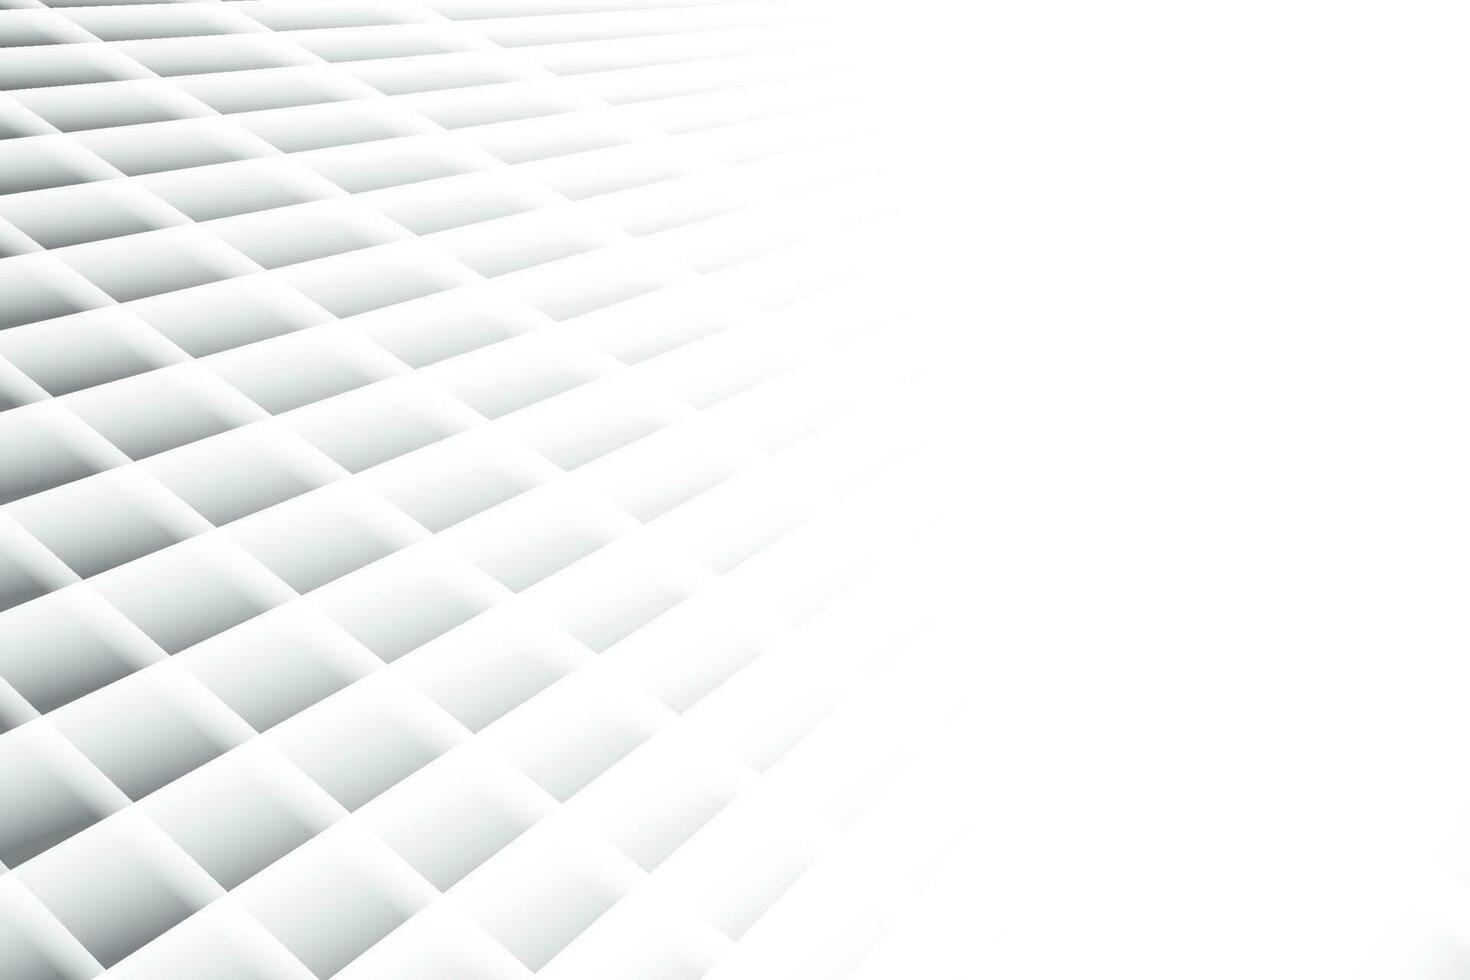 color blanco y gris abstracto, fondo de rayas de diseño moderno con forma geométrica. ilustración vectorial vector